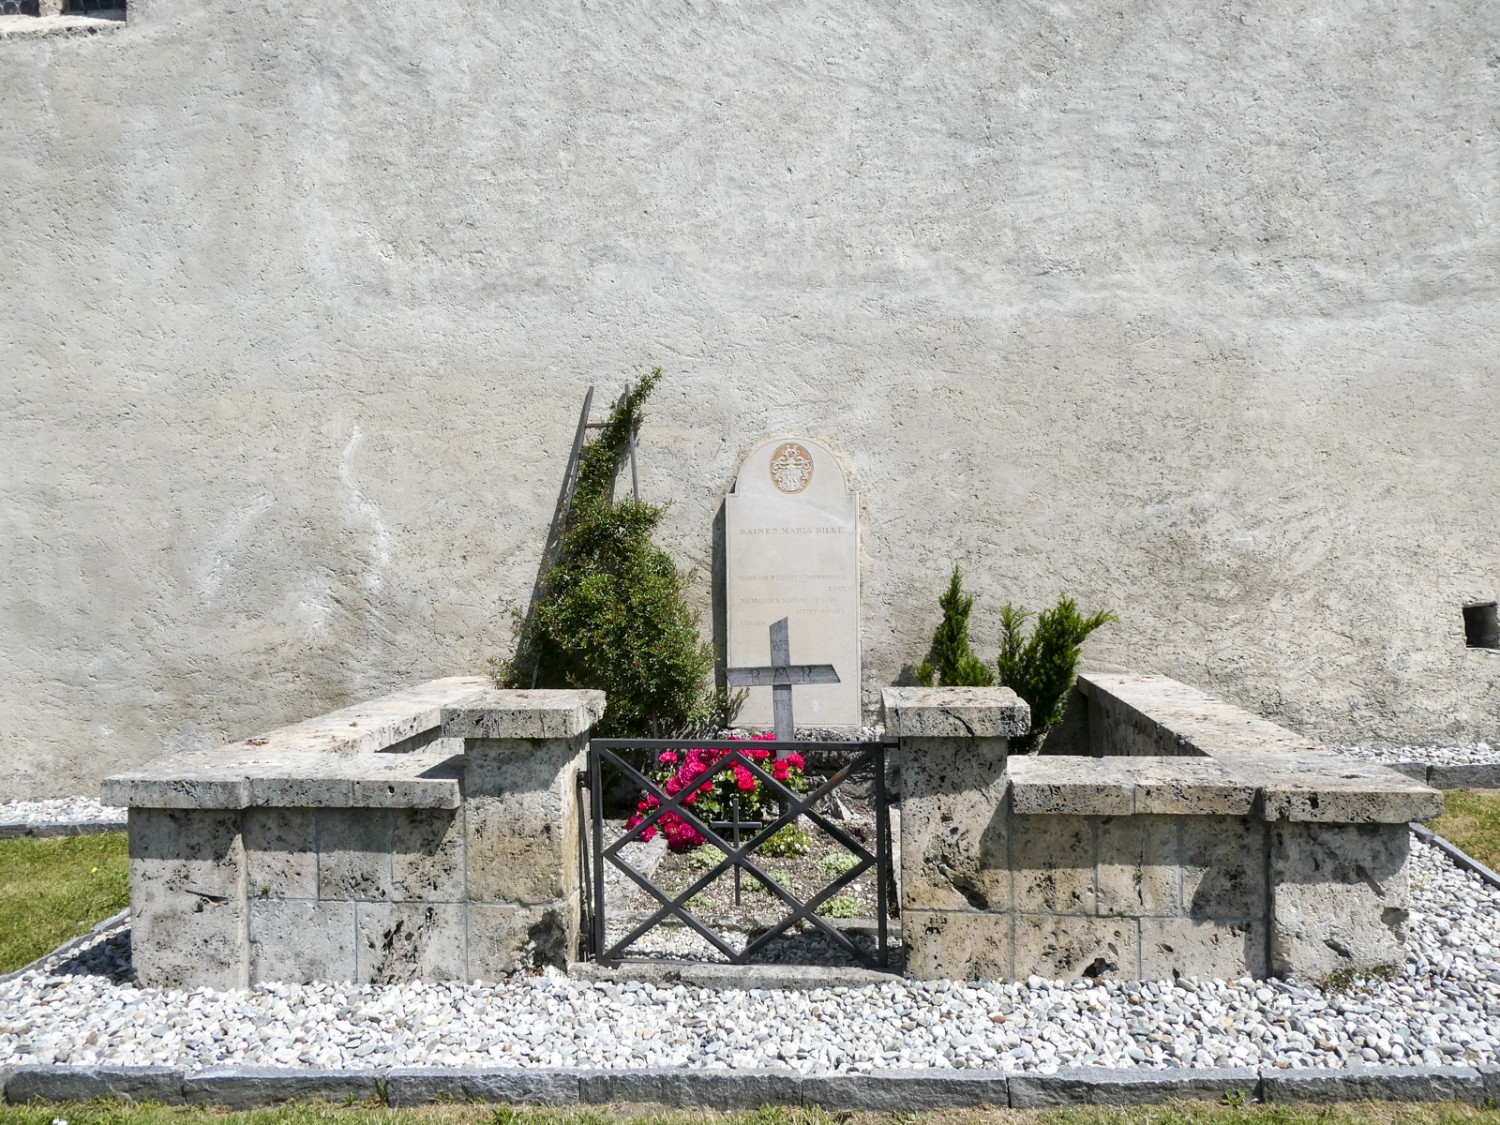 Ici repose l’écrivain Rainer Maria Rilke. Il ne vécut jamais à Rarogne, mais souhaitait que ce lieu soit sa dernière demeure. Photo: Rémy Kappeler